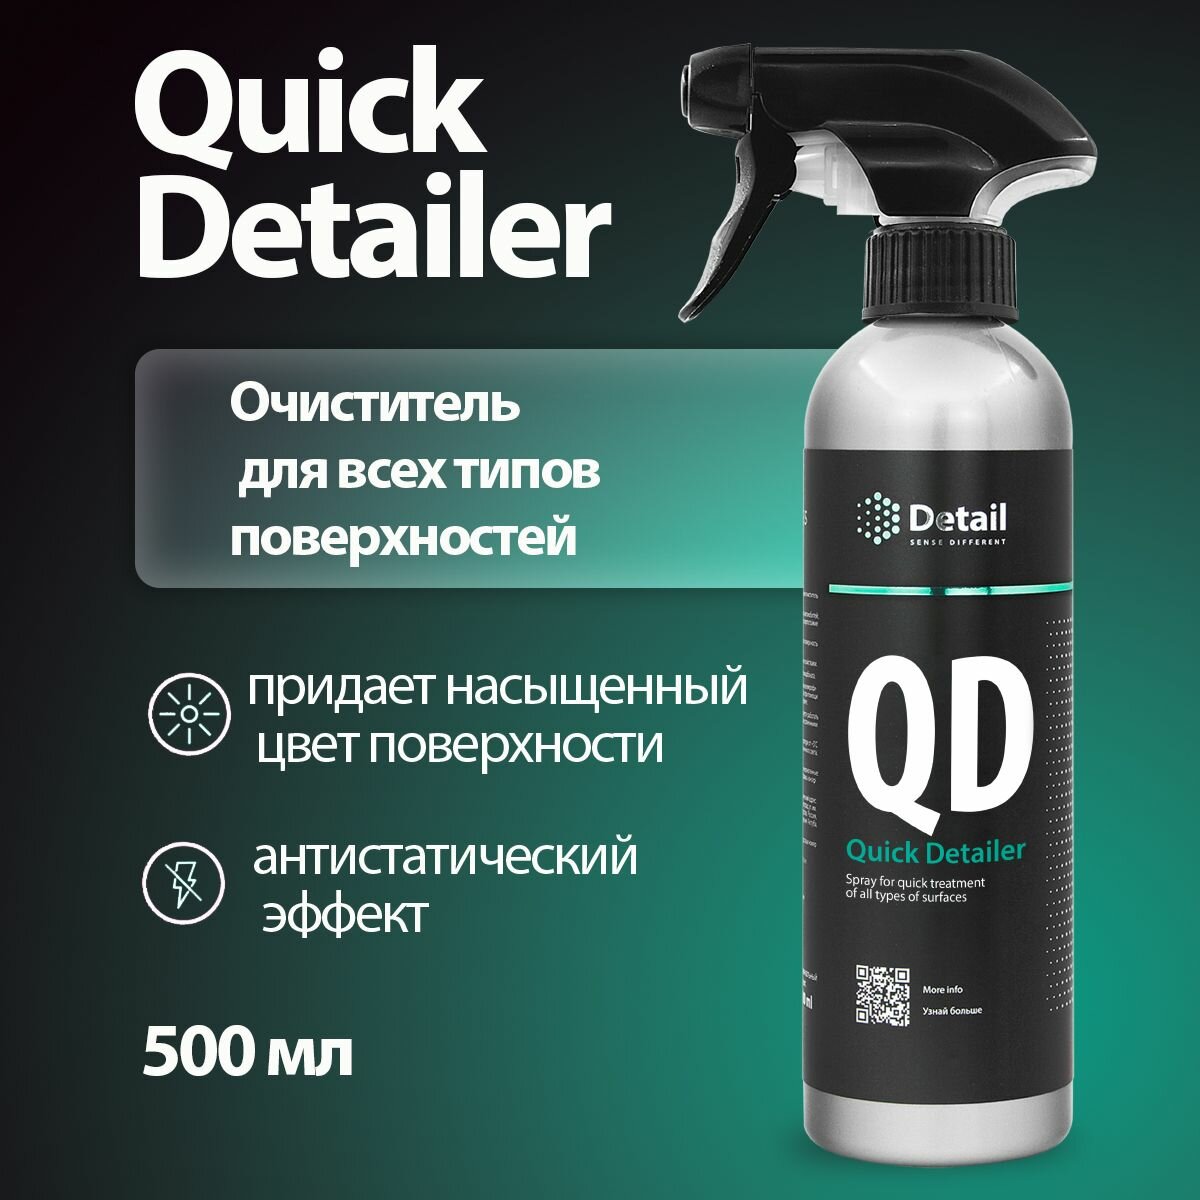 DETAIL/ Спрей для быстрого ухода за всеми типами поверхностей QD Quick Detailer, 500 мл.